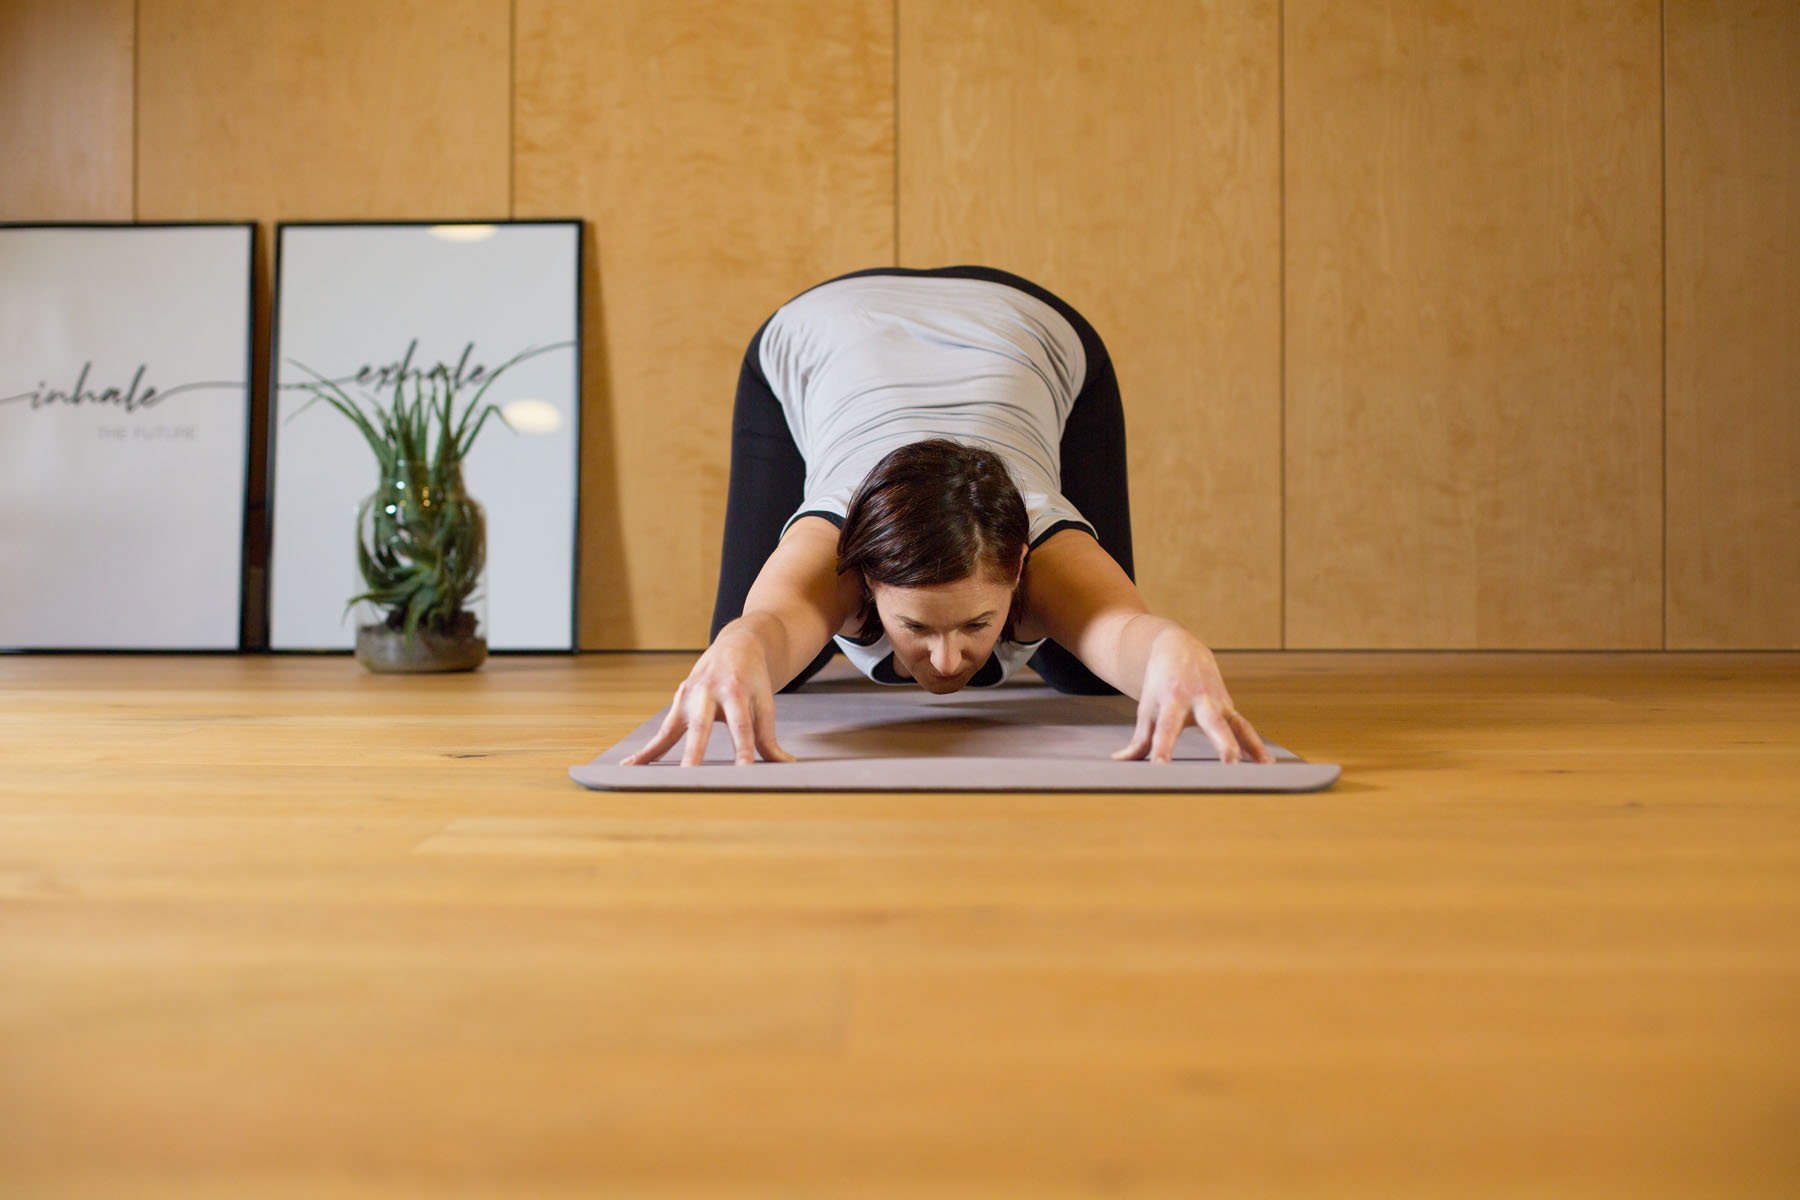 5 gute Gründe die für Yoga sprechen